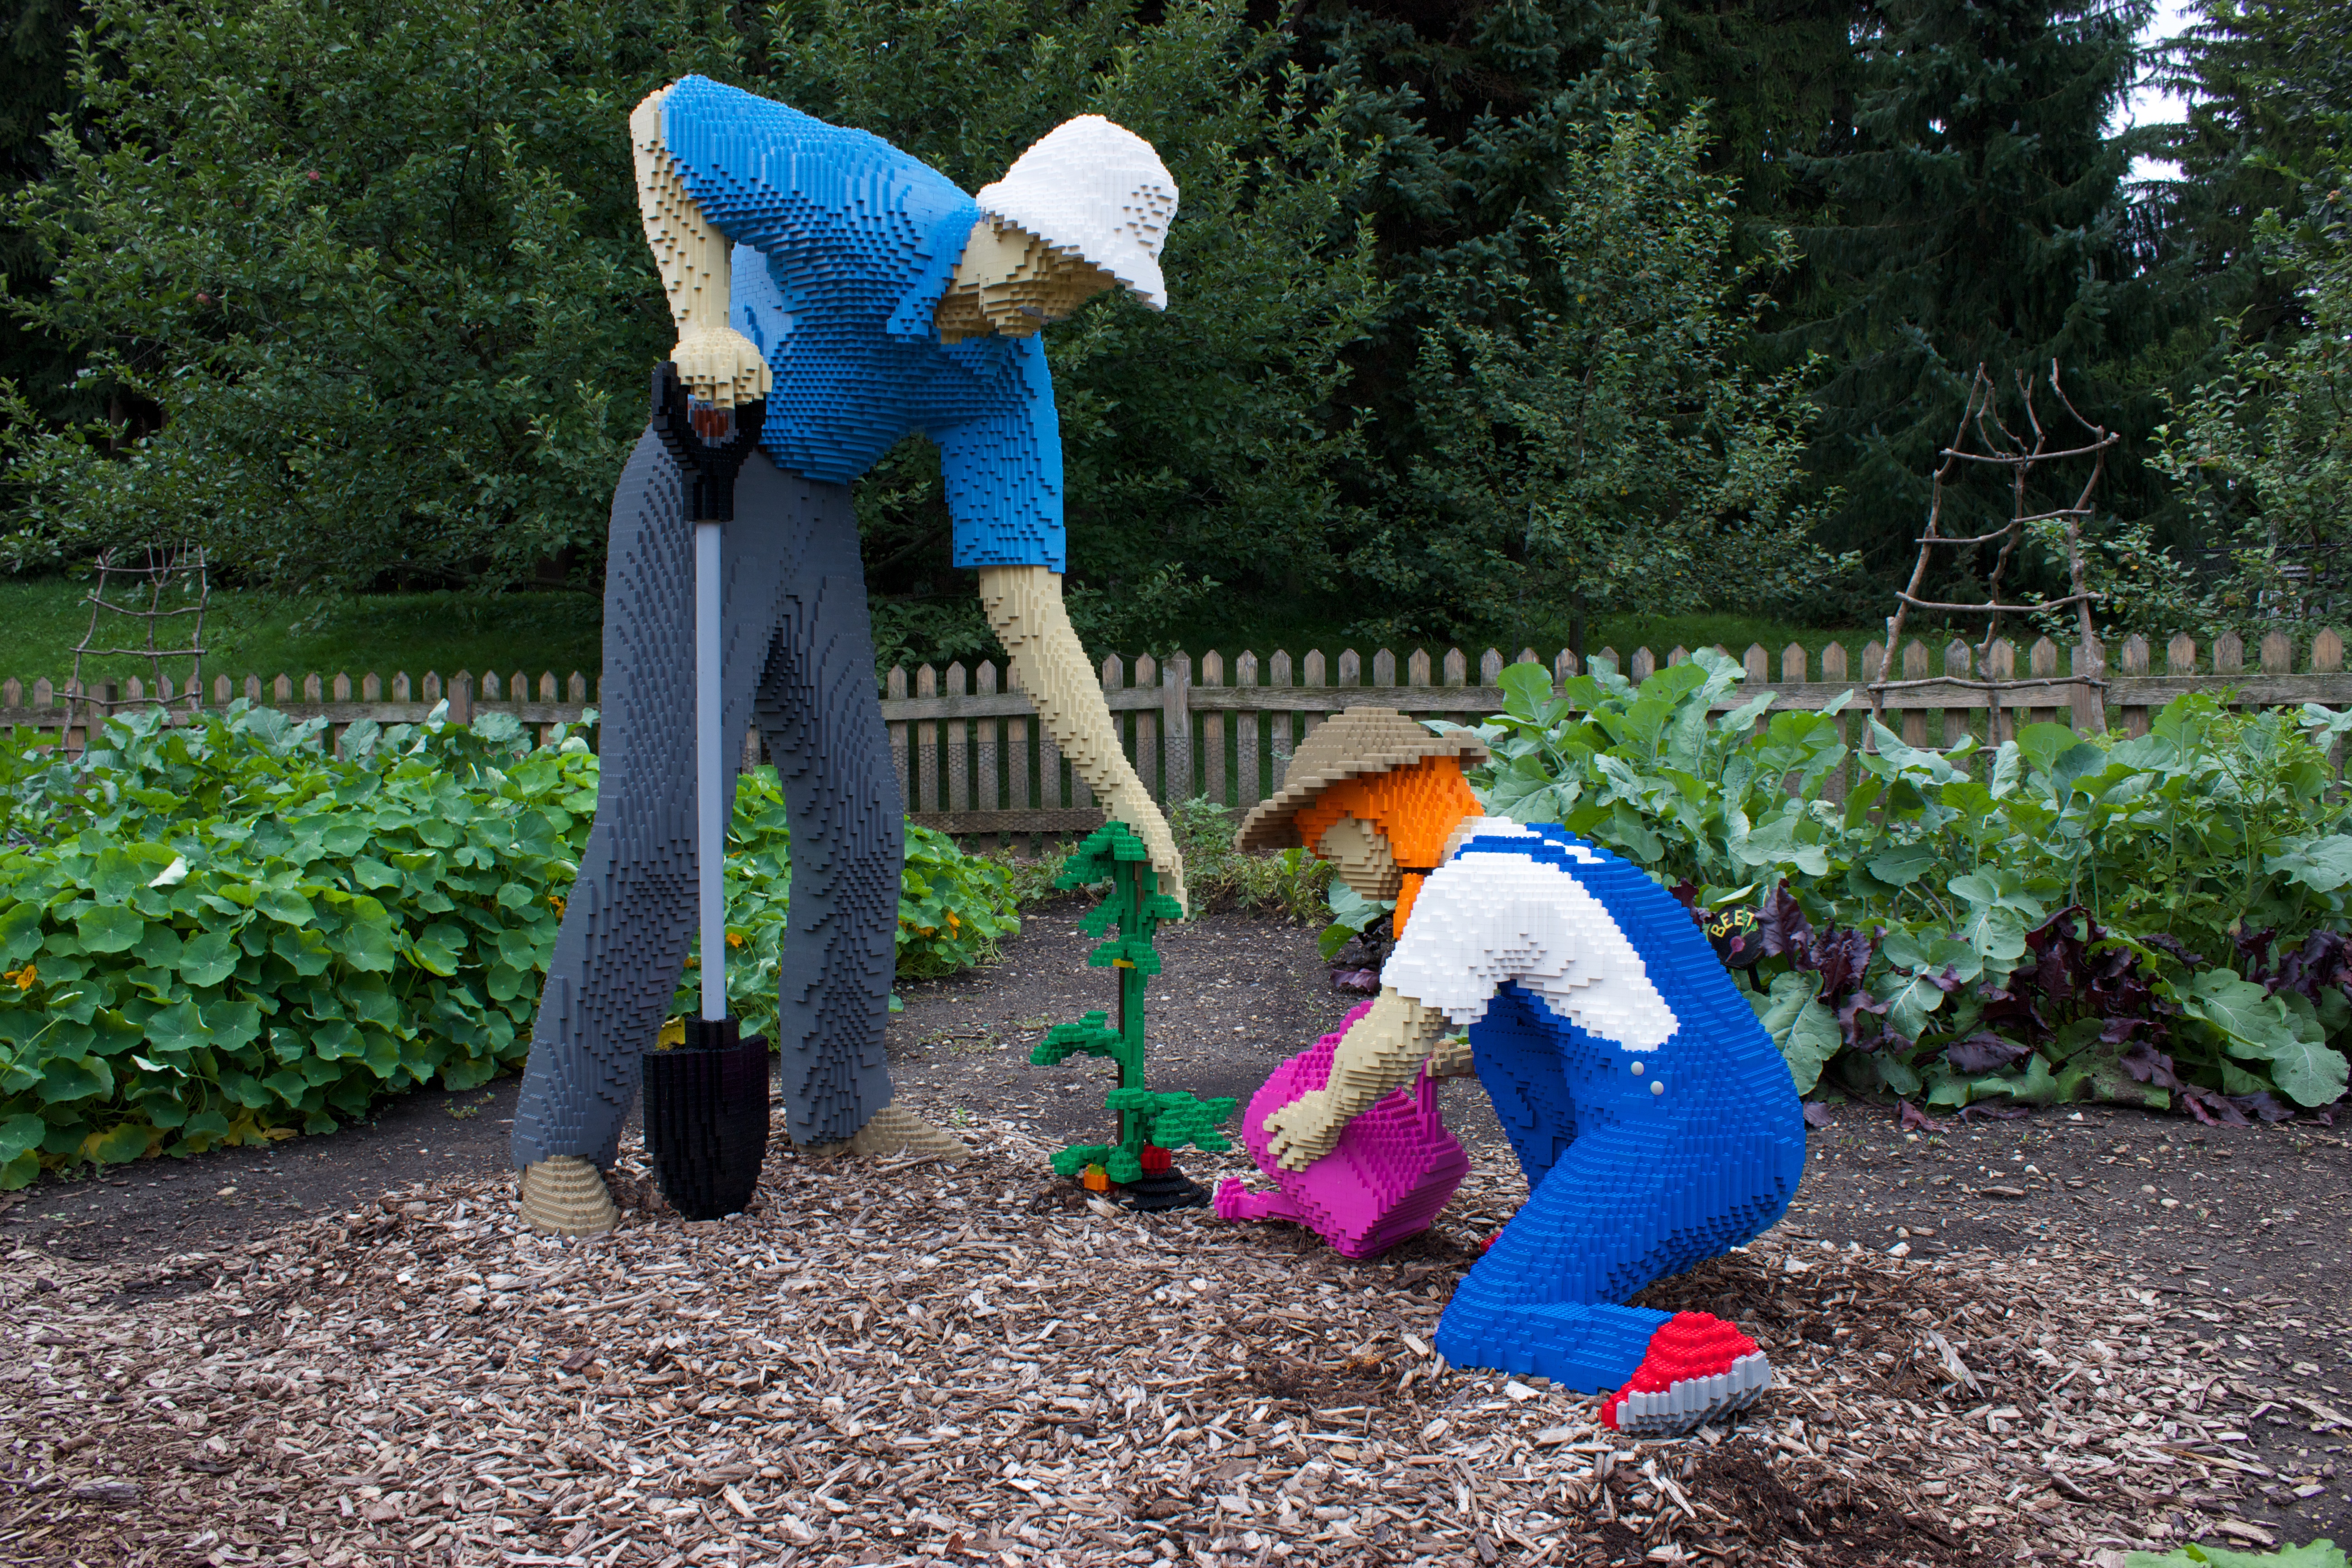 Gardening-grandpa LEGO art by Sean Kenney